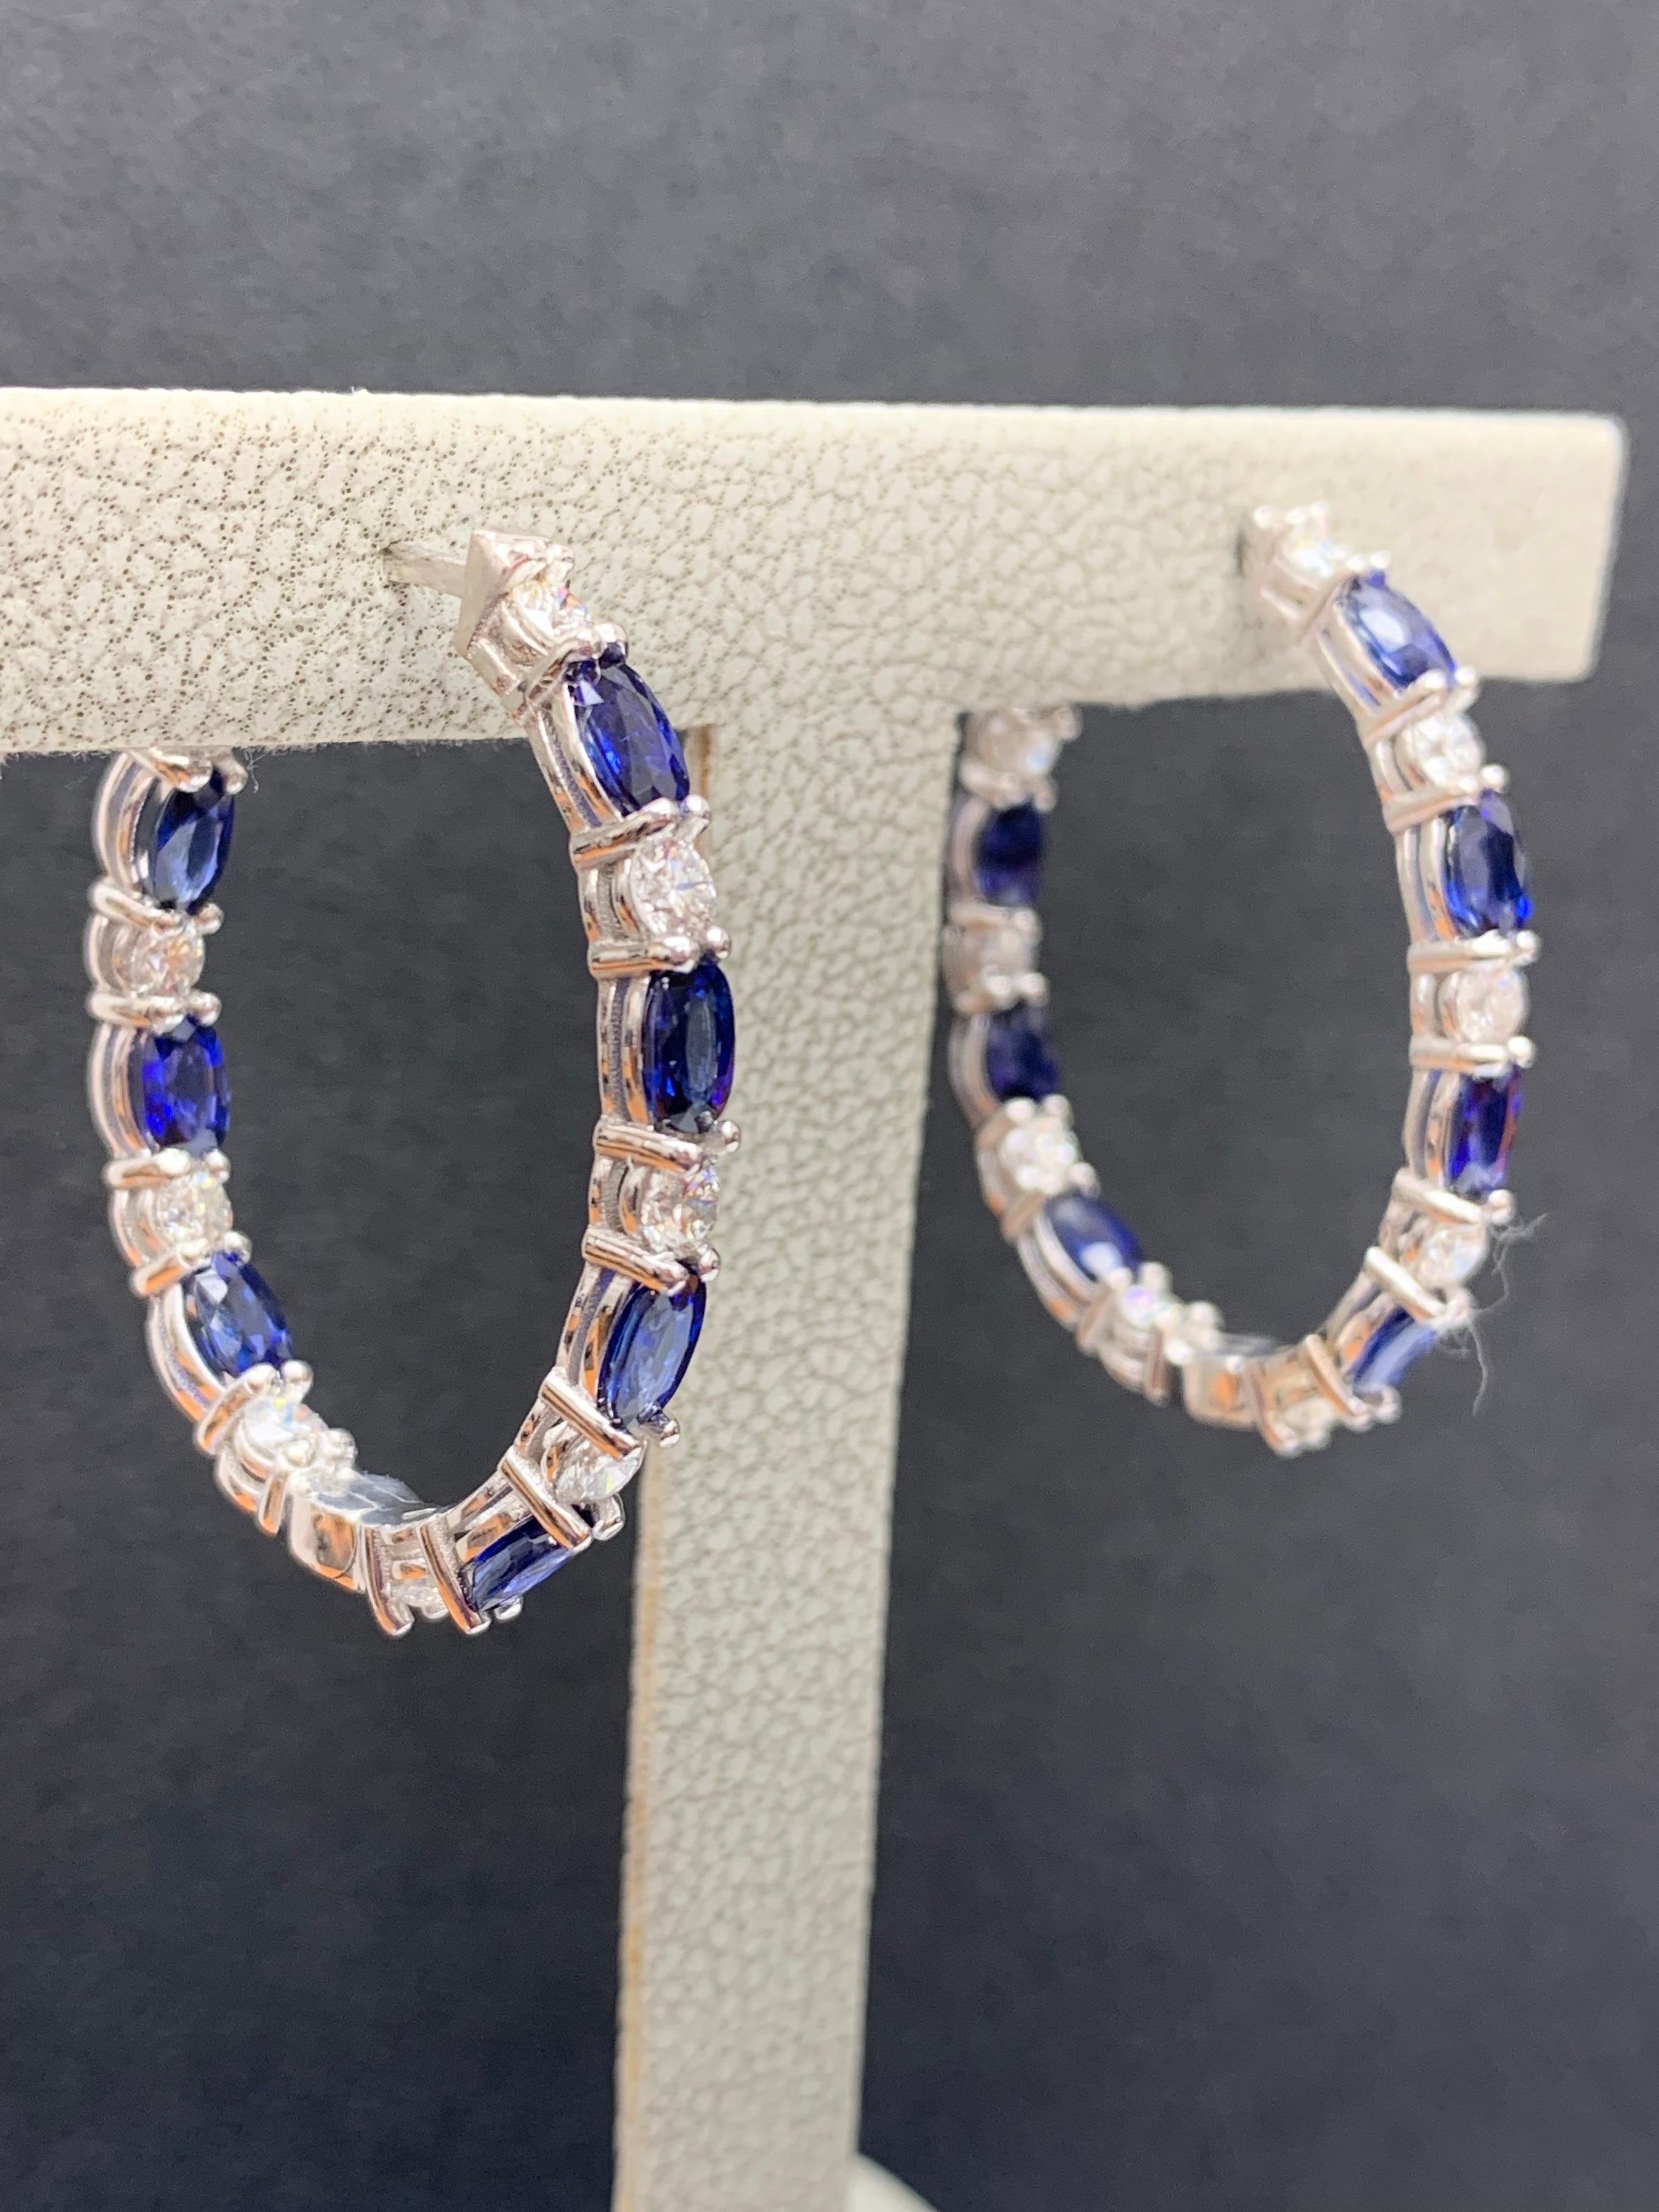 4.13 Carat Oval Cut Blue Sapphire Diamond Hoop Earrings in 14K White Gold For Sale 1